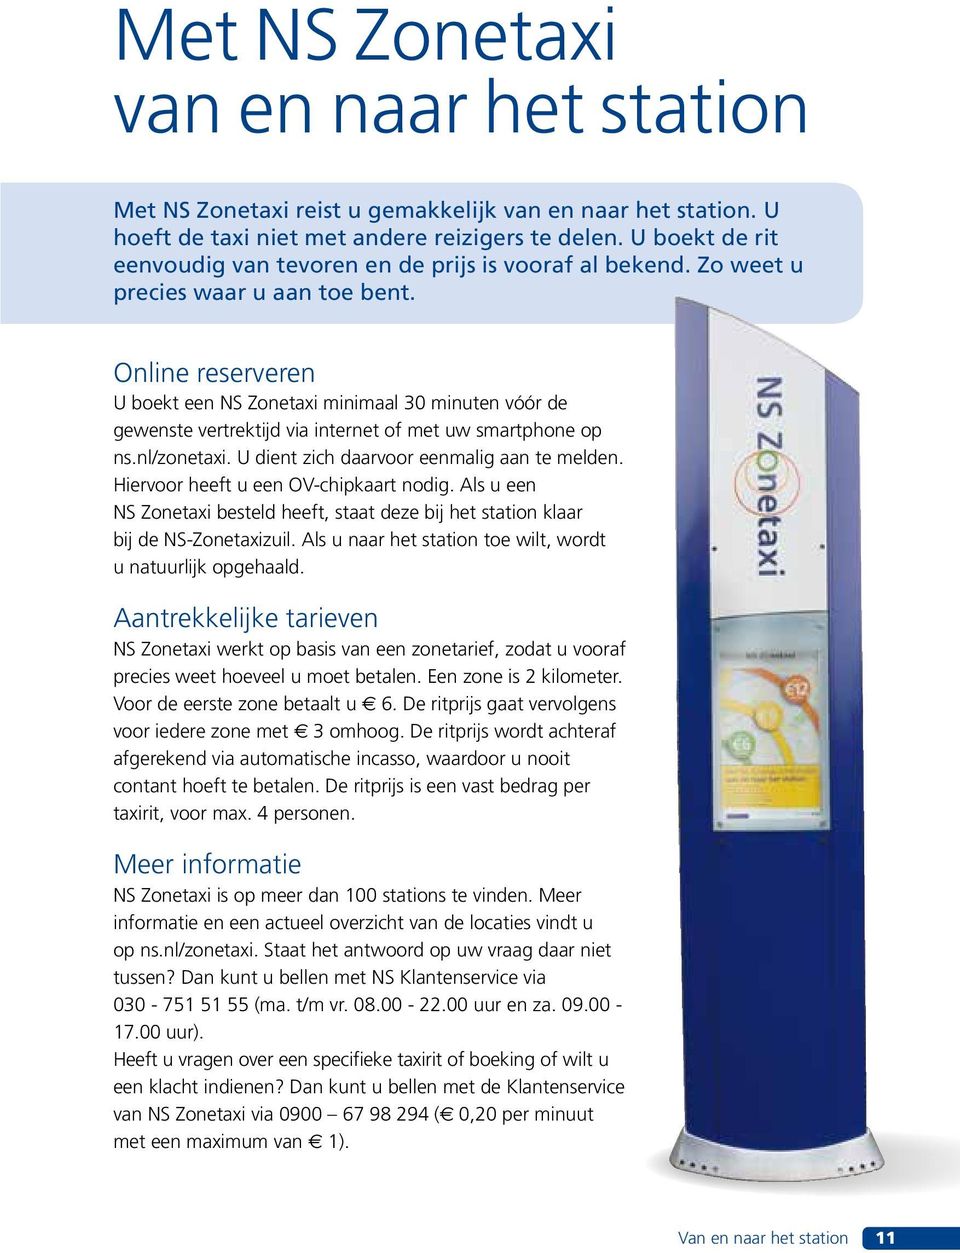 Online reserveren U boekt een NS Zonetaxi minimaal 30 minuten vóór de gewenste vertrektijd via internet of met uw smartphone op ns.nl/zonetaxi. U dient zich daarvoor eenmalig aan te melden.